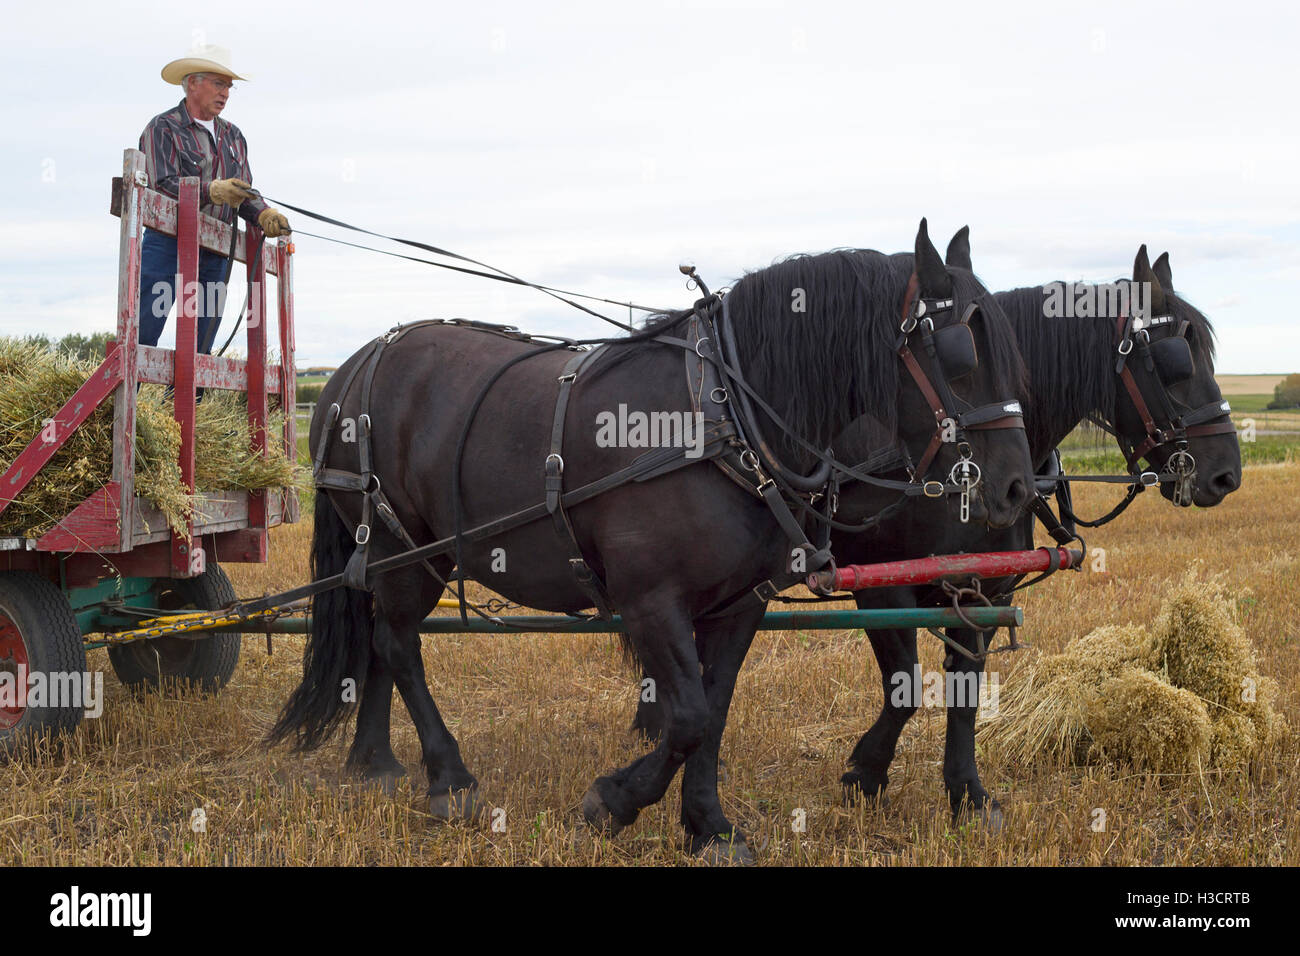 Hombre conduciendo un carro tirado por caballos con el equipo de dos caballos Percheron para recoger garabatos durante la cosecha en las tierras de labranza de Alberta, al oeste de Canadá Foto de stock